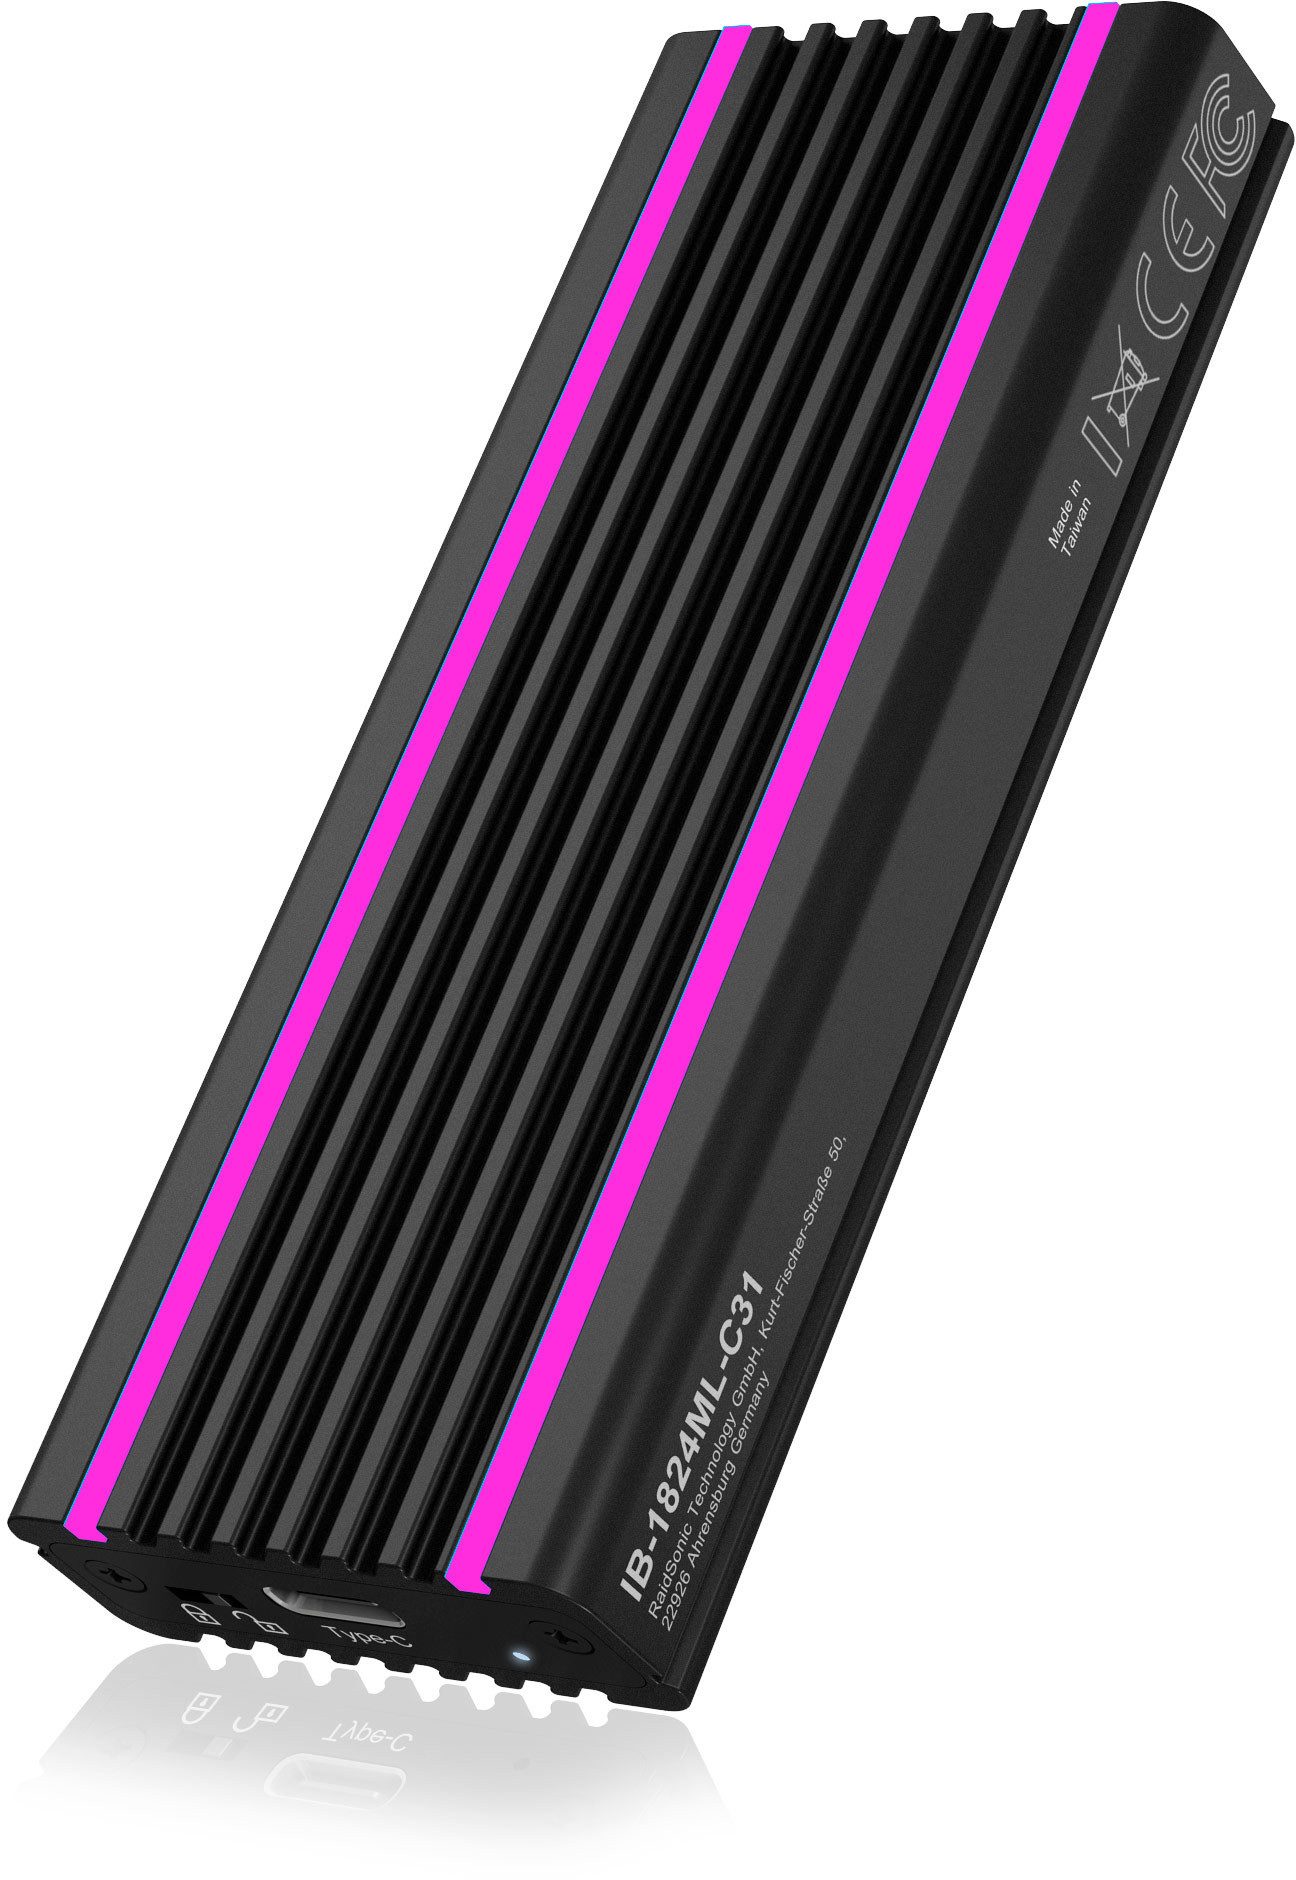 Festplatten-Gehäuse Externes Type-C Gehäuse M.2 NVME SSD RGB, Hochwertiges Aluminium